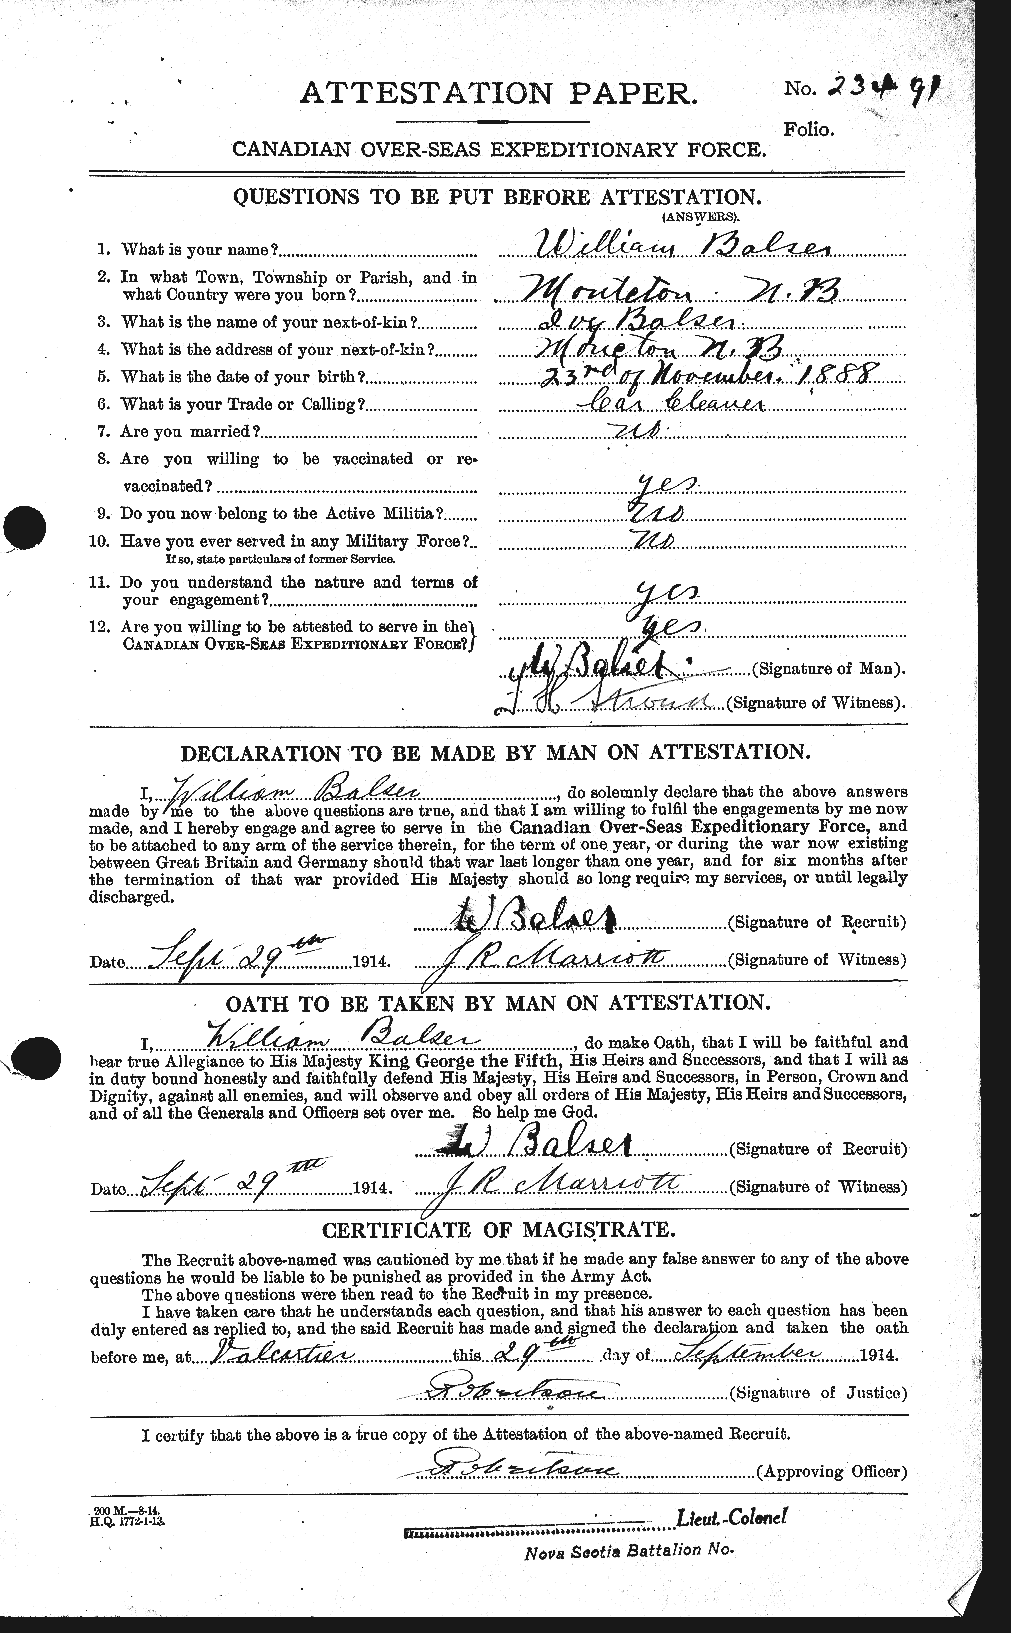 Dossiers du Personnel de la Première Guerre mondiale - CEC 219556a